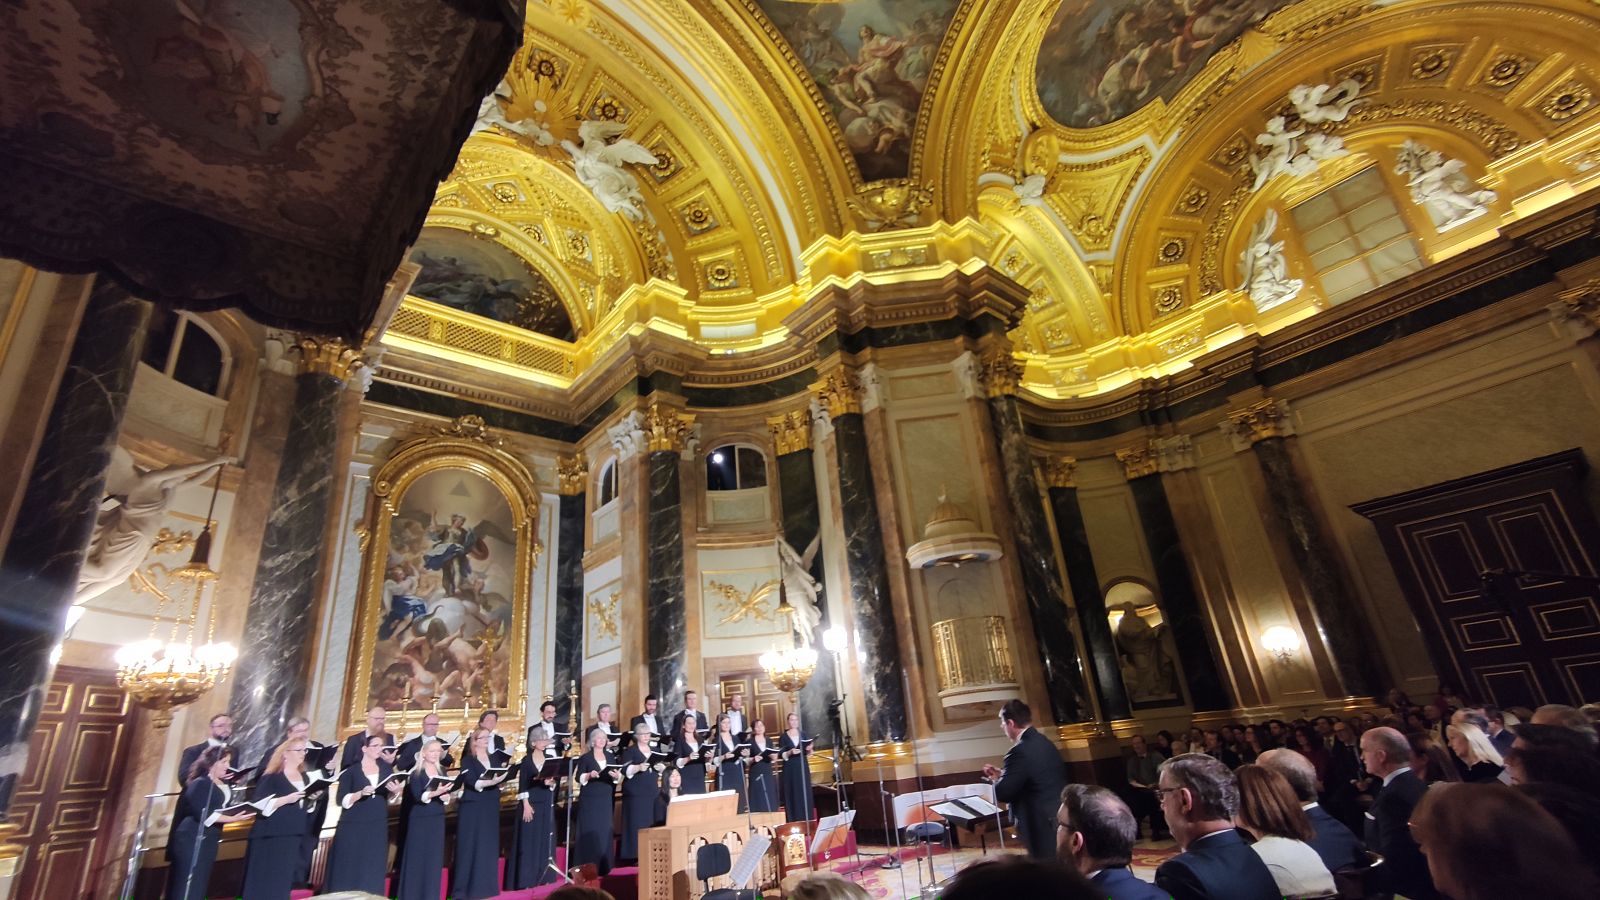 El Coro RTVE interpreta la Peque�a Misa Solemne de Rossini en la Capilla Real, con Marc Korovitch